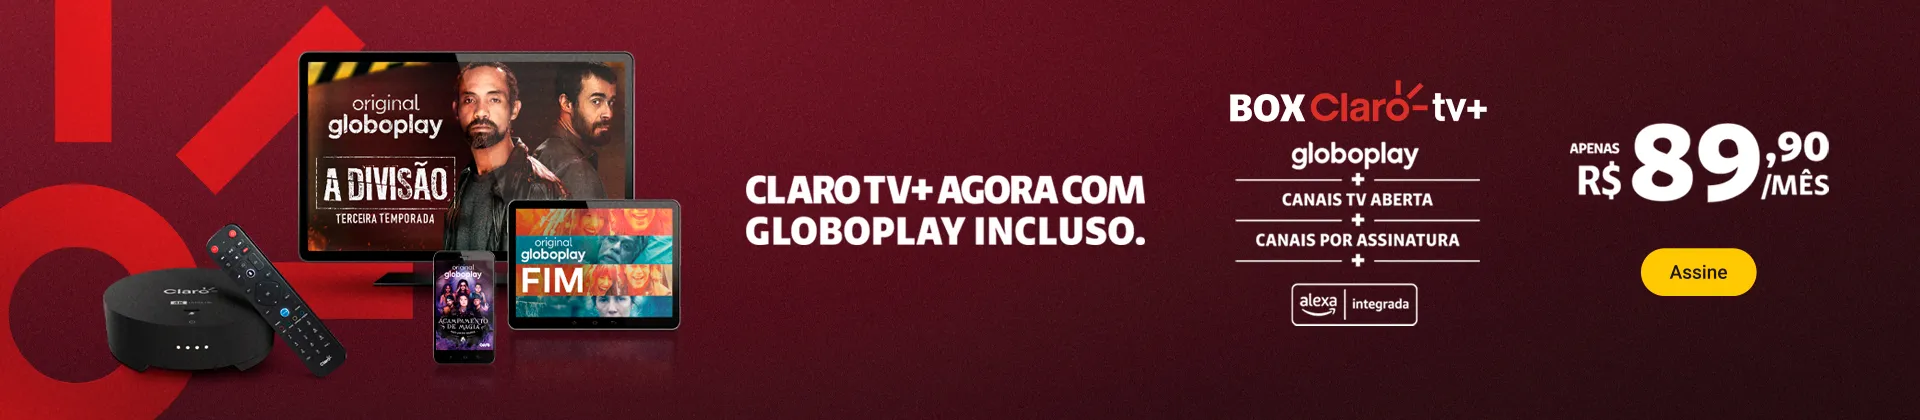 Imagem ilustrativa de programações da Globoplay com a Box Claro tv+